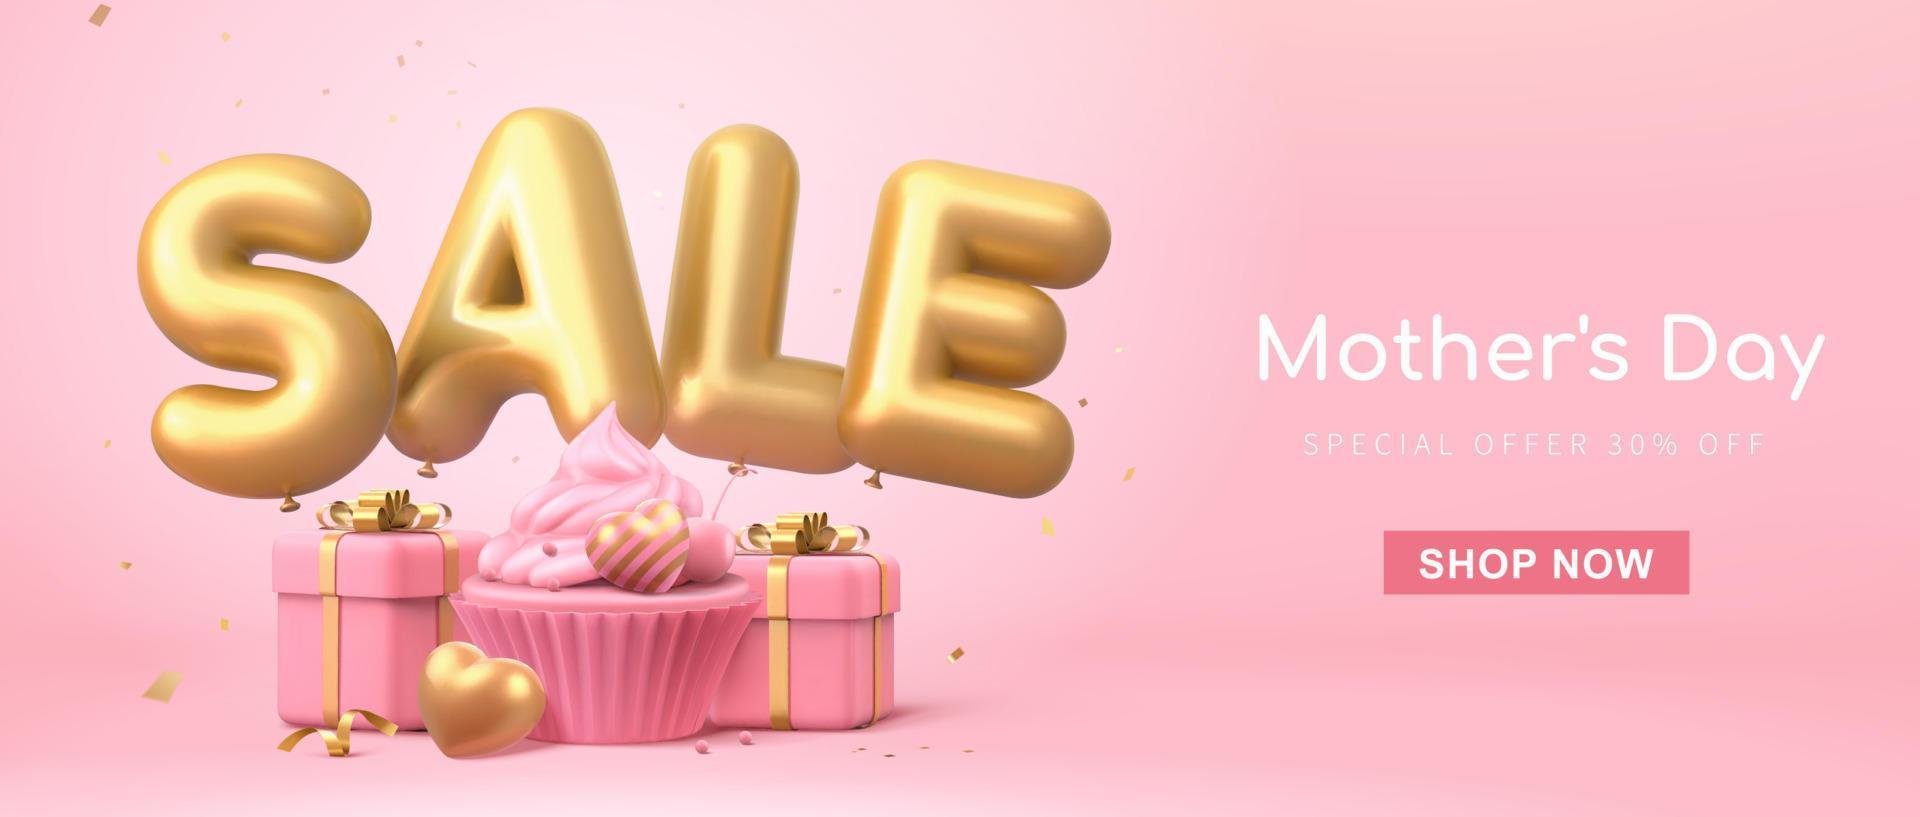 3d webb baner mall för mors dag eller hjärtans dag. minimal rosa layout med försäljning ord ballonger, kopp kaka och gåva lådor. vektor